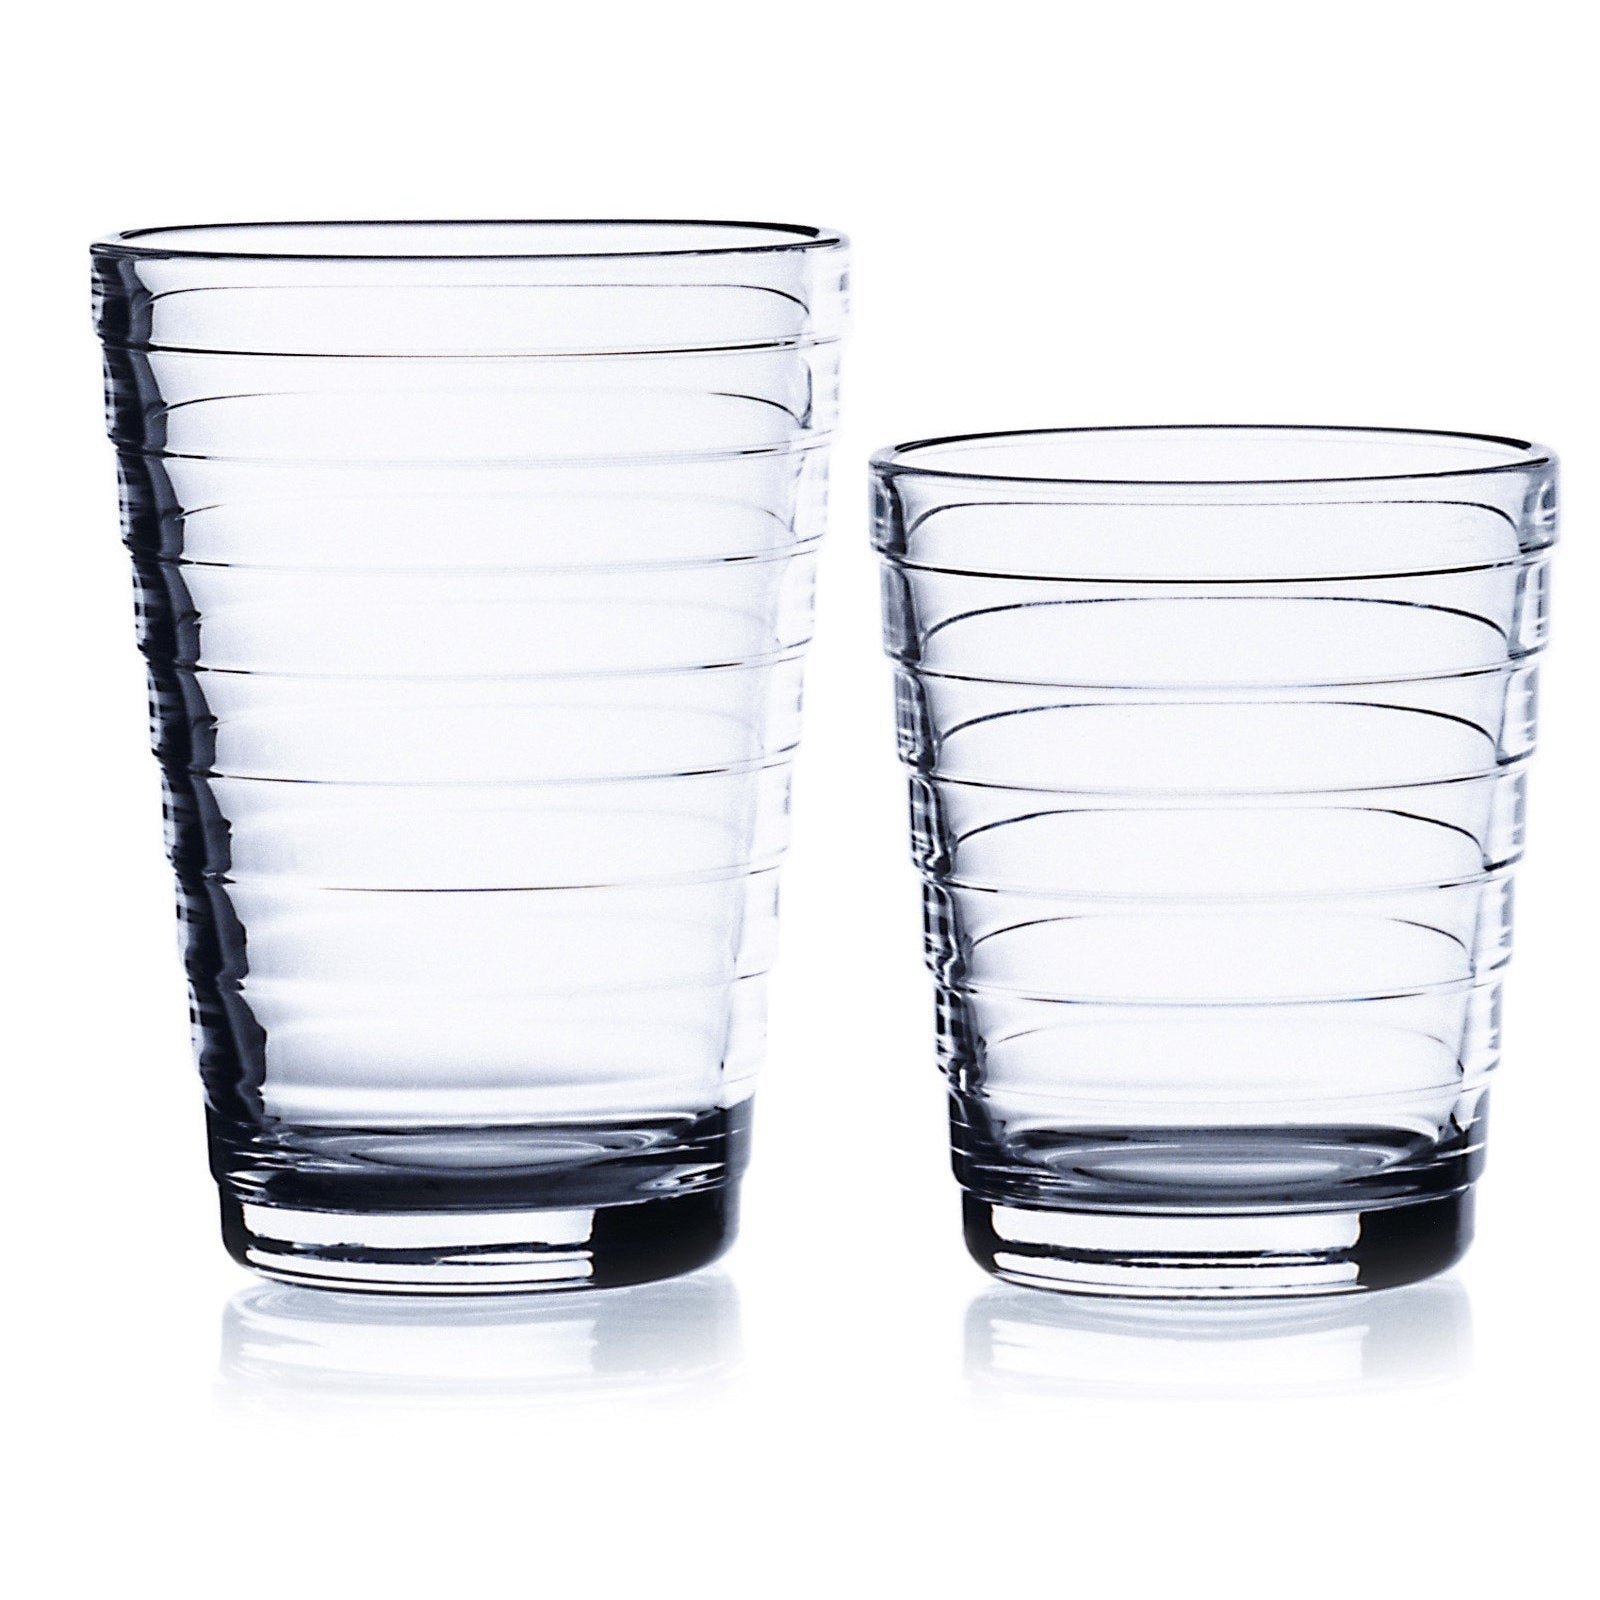 Iittala Aino Aalto Gläser Wassergrün 2Stck, 22cl-Wasserglas-Iittala-6411929510664-1008627-IIT-inwohn